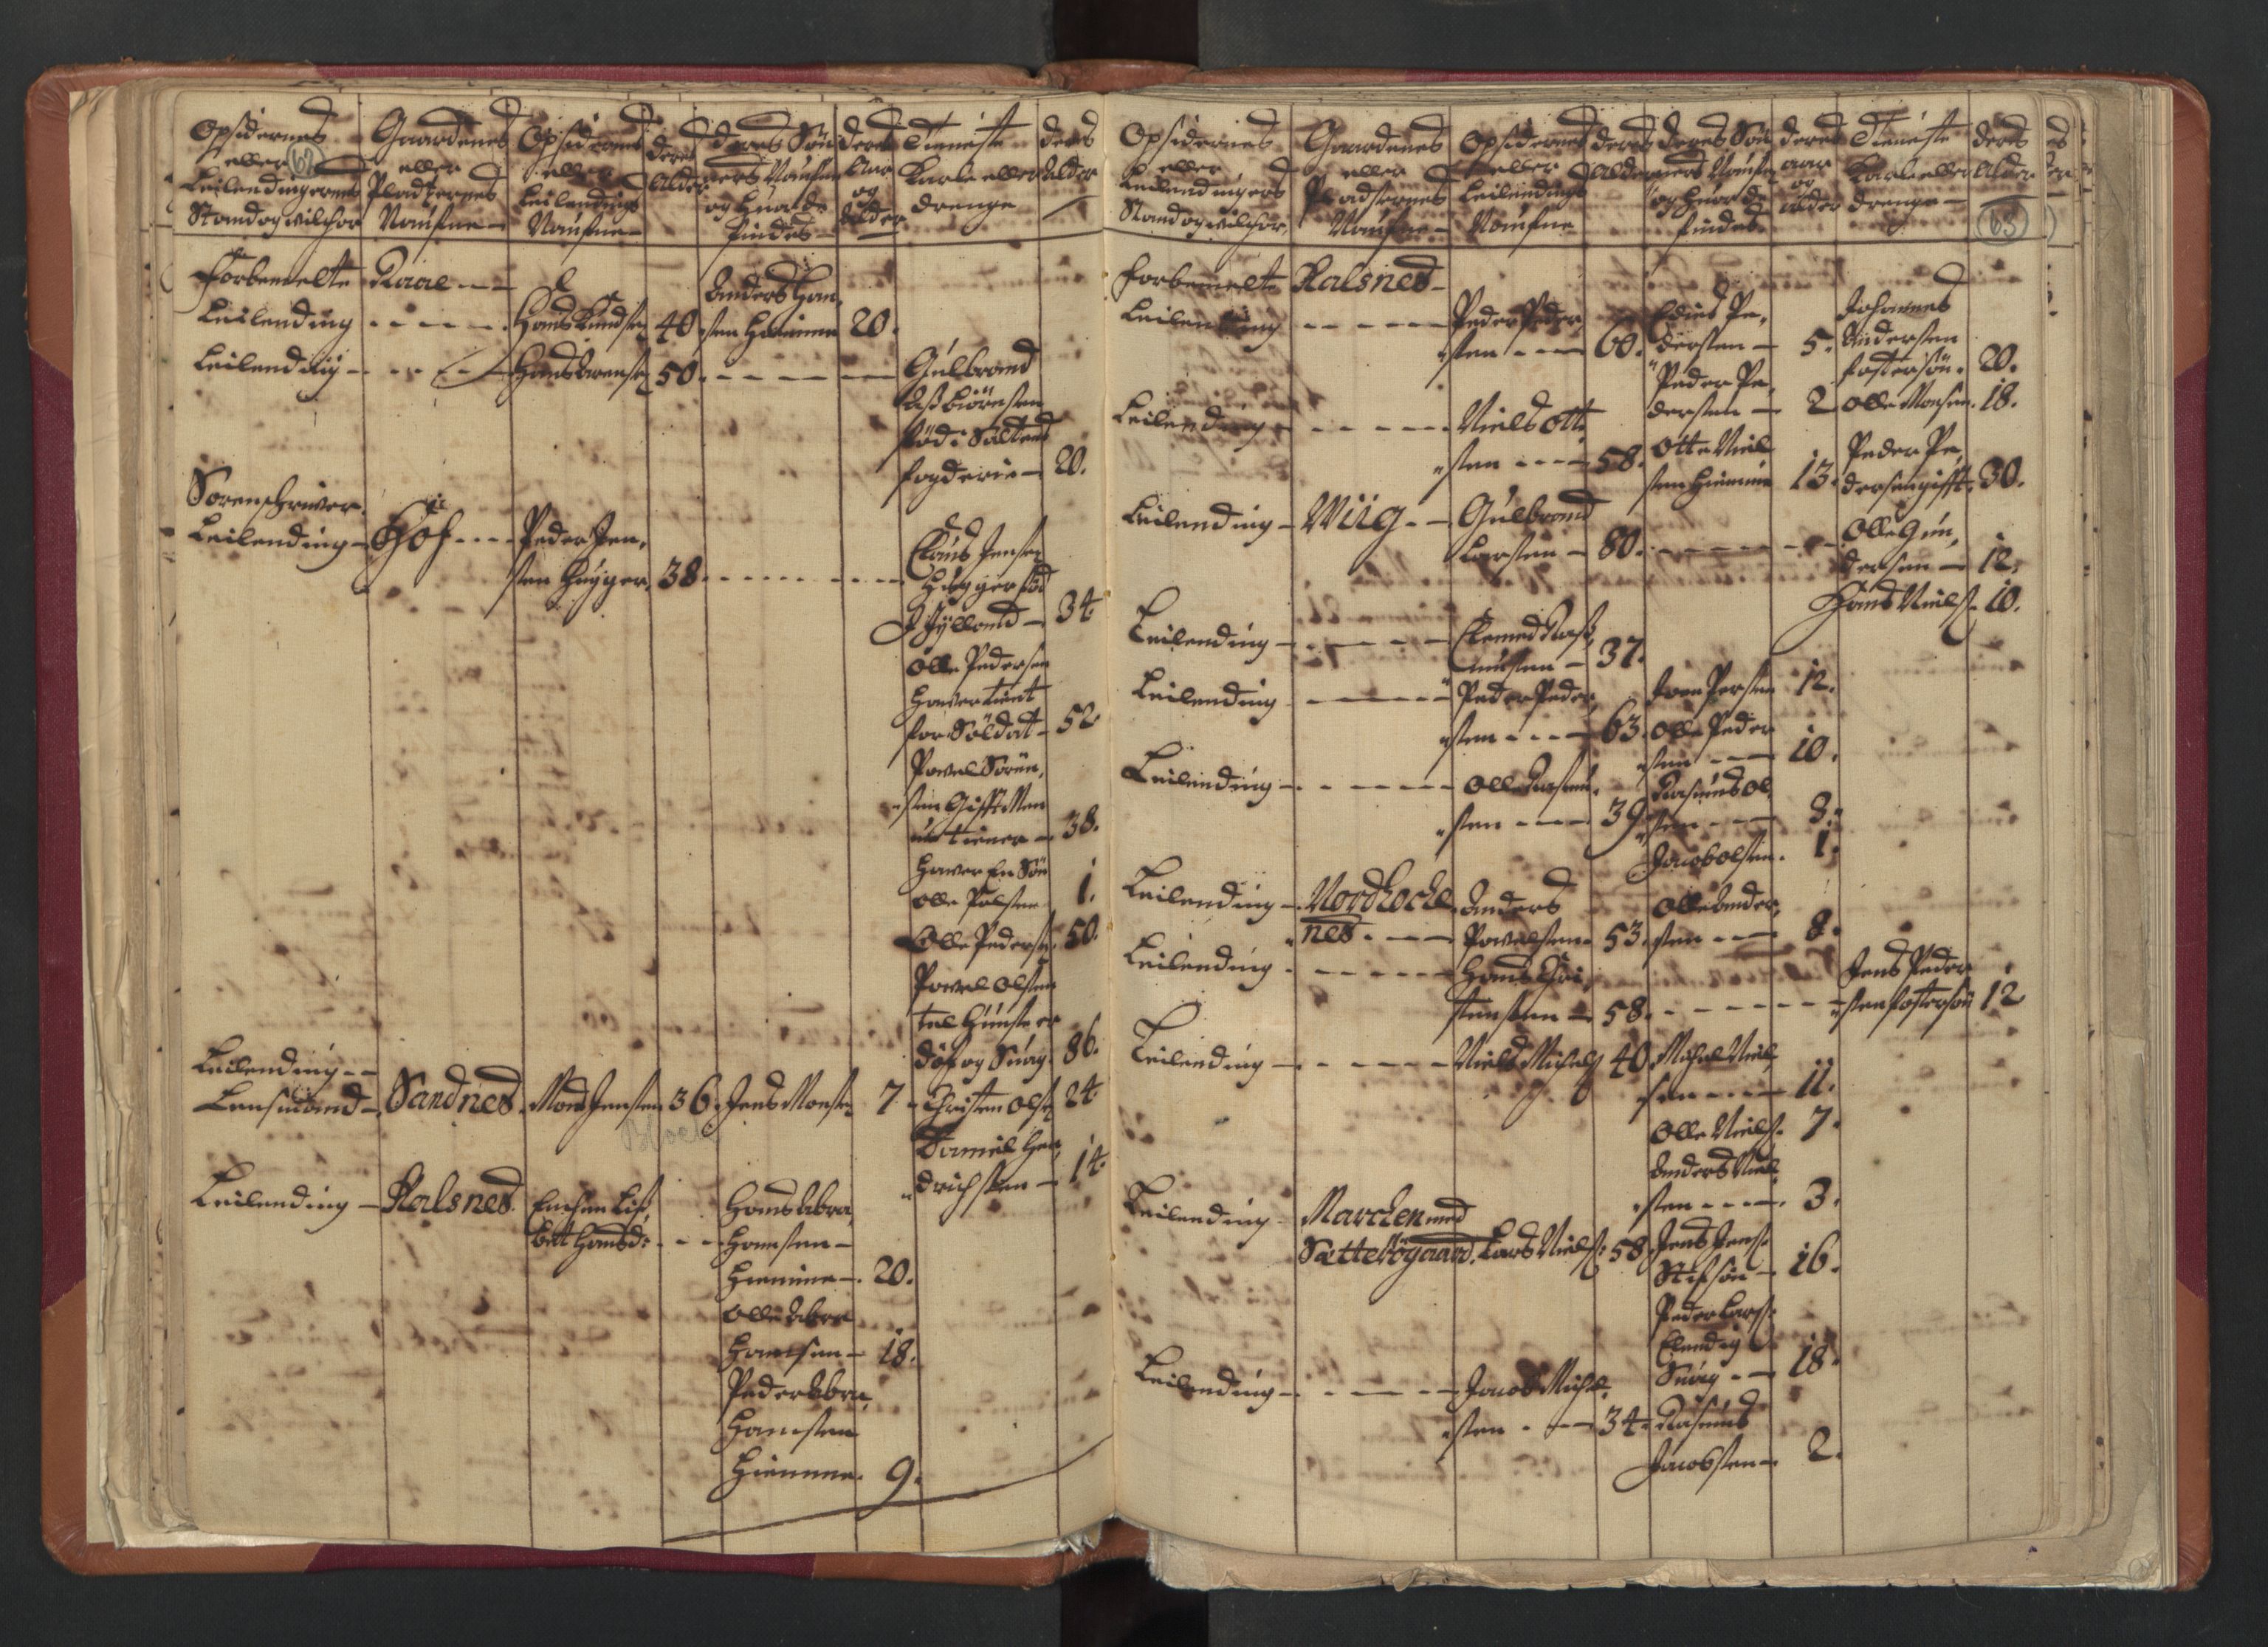 RA, Census (manntall) 1701, no. 18: Vesterålen, Andenes and Lofoten fogderi, 1701, p. 62-63